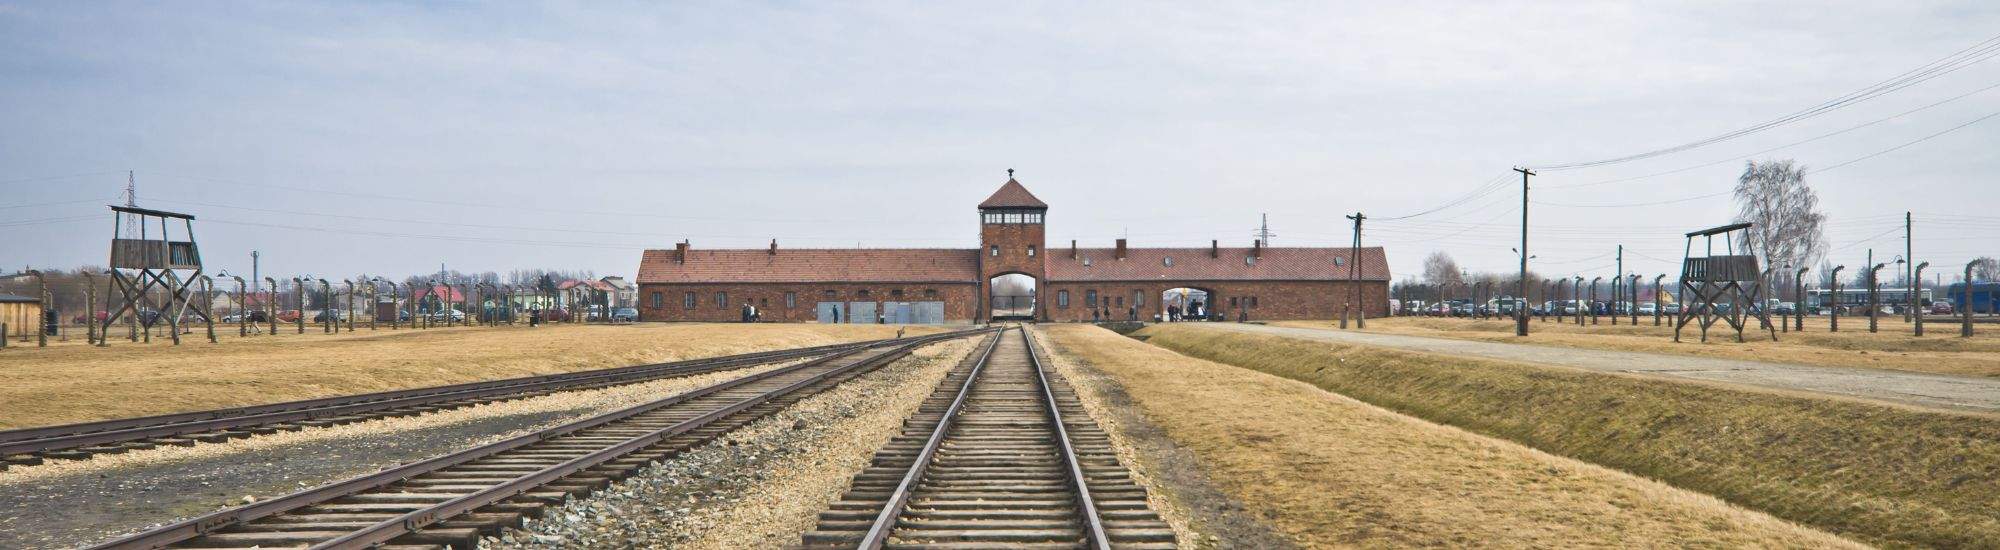 Les États-Unis soutiennent la visite virtuelle d'Auschwitz-Birkenau